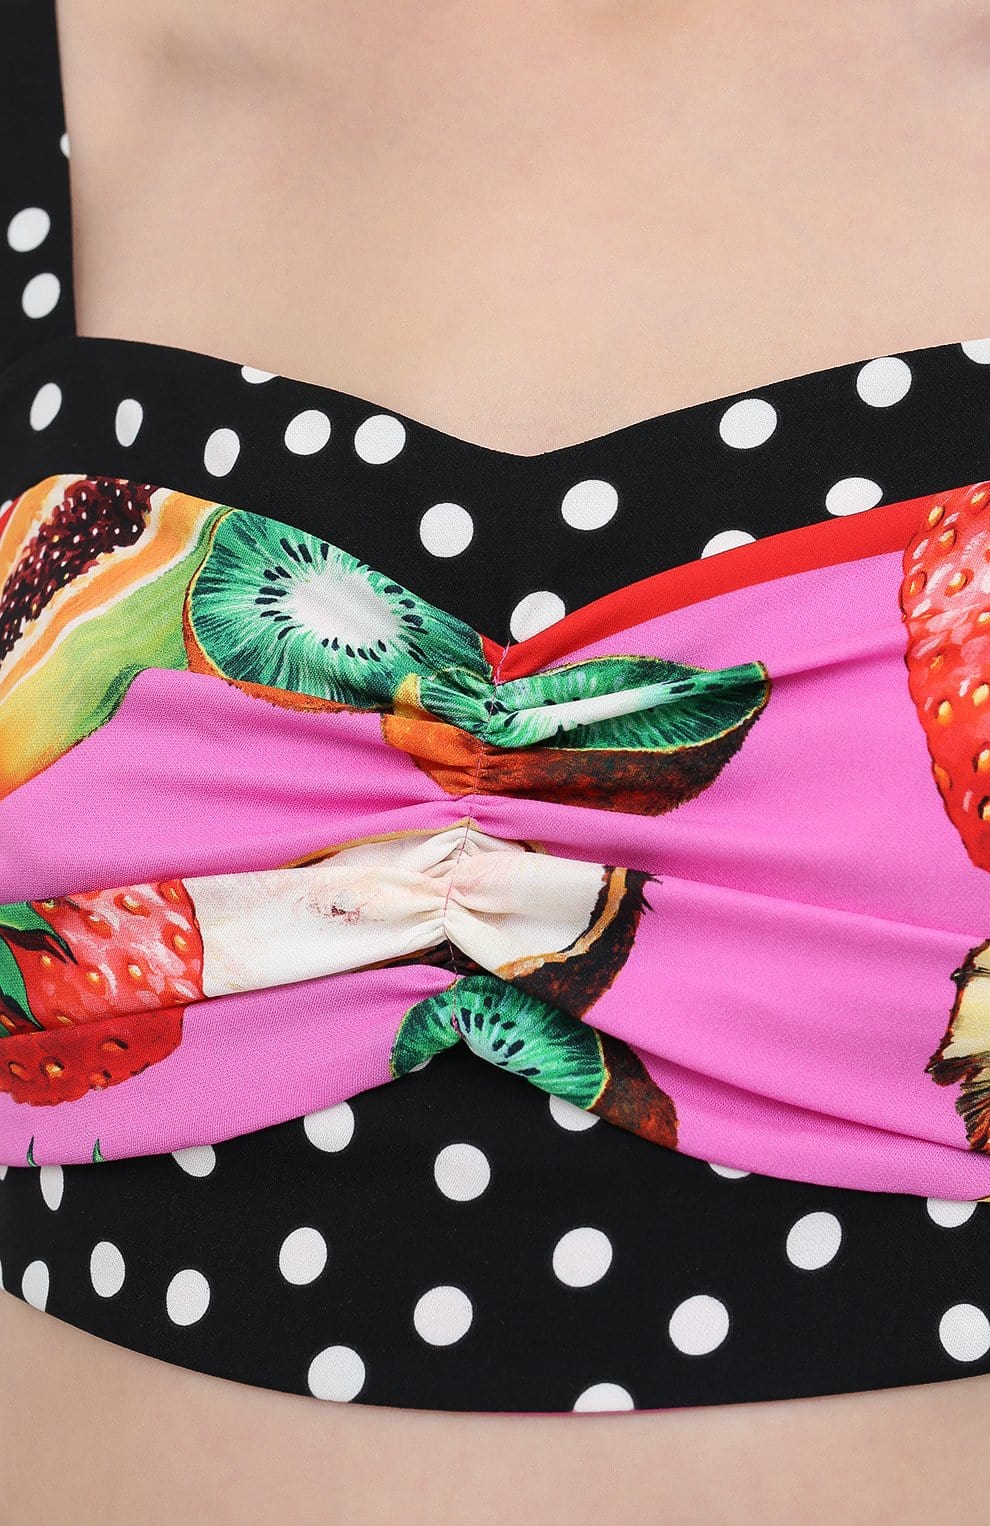 Dolce & Gabbana Fruits Polka Dot Print Silk Top